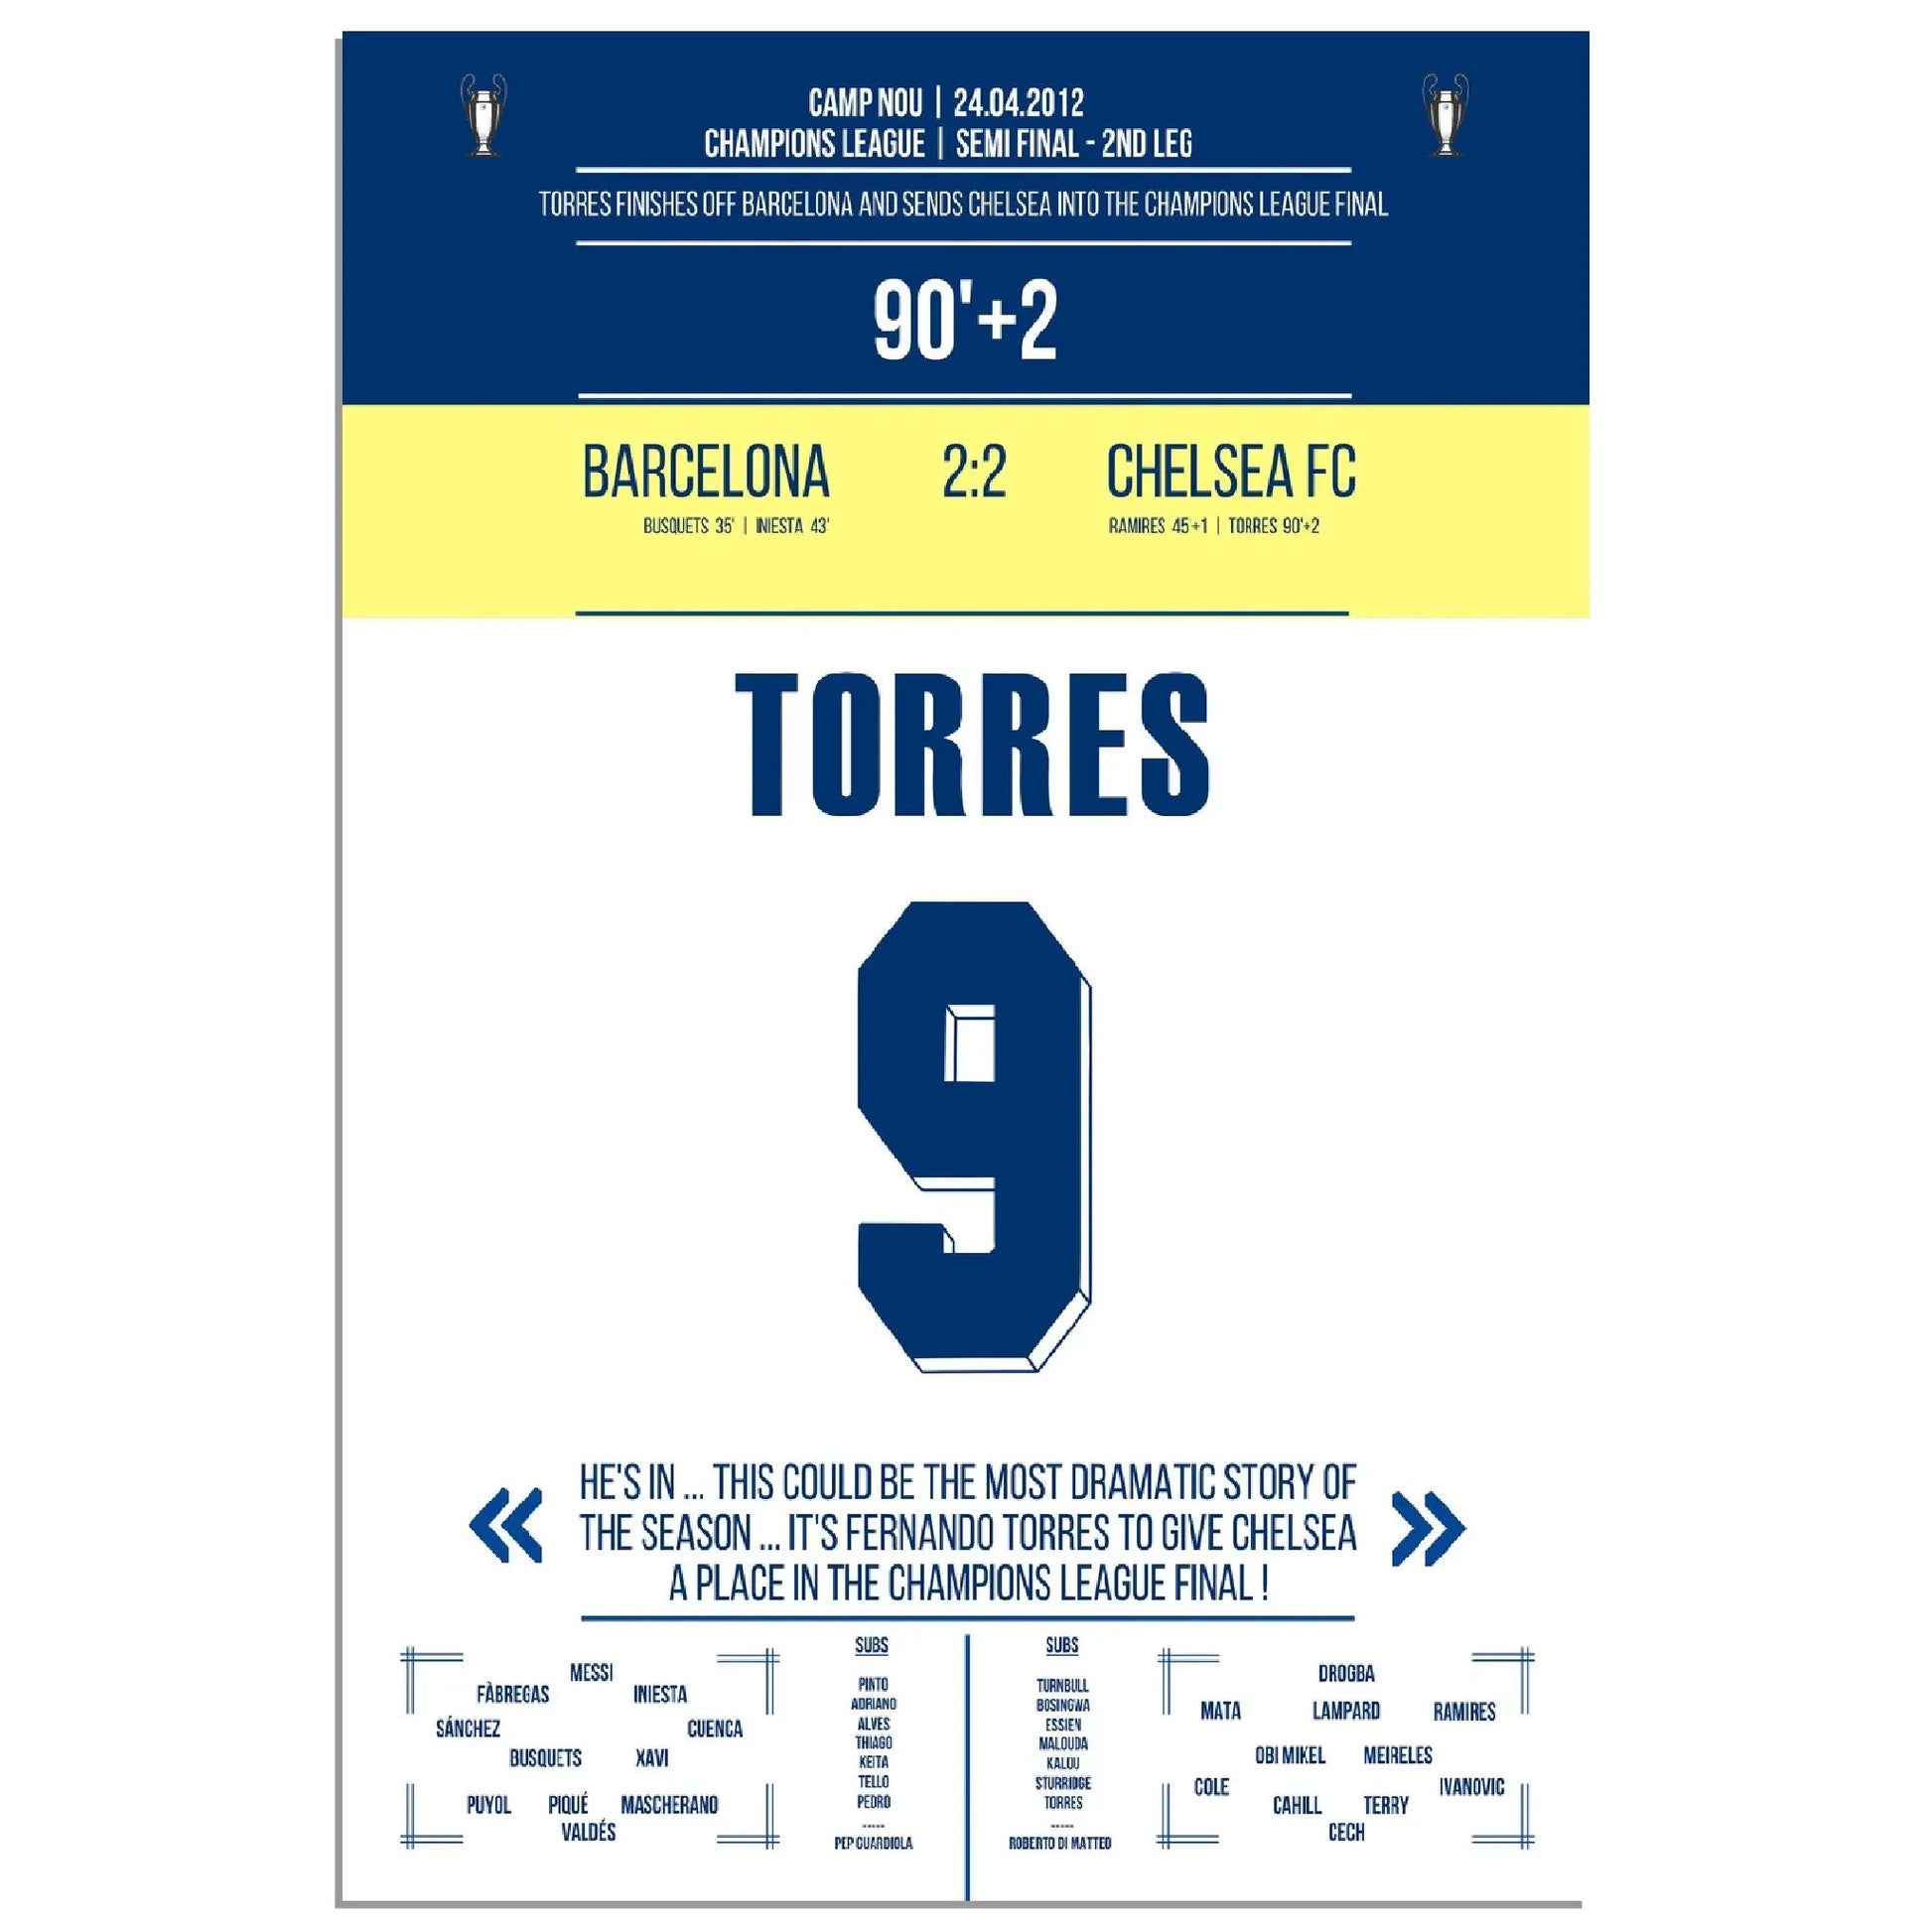 Torres entscheidendes Tor im Camp Nou auf dem Weg zum späteren Champions League Titel 